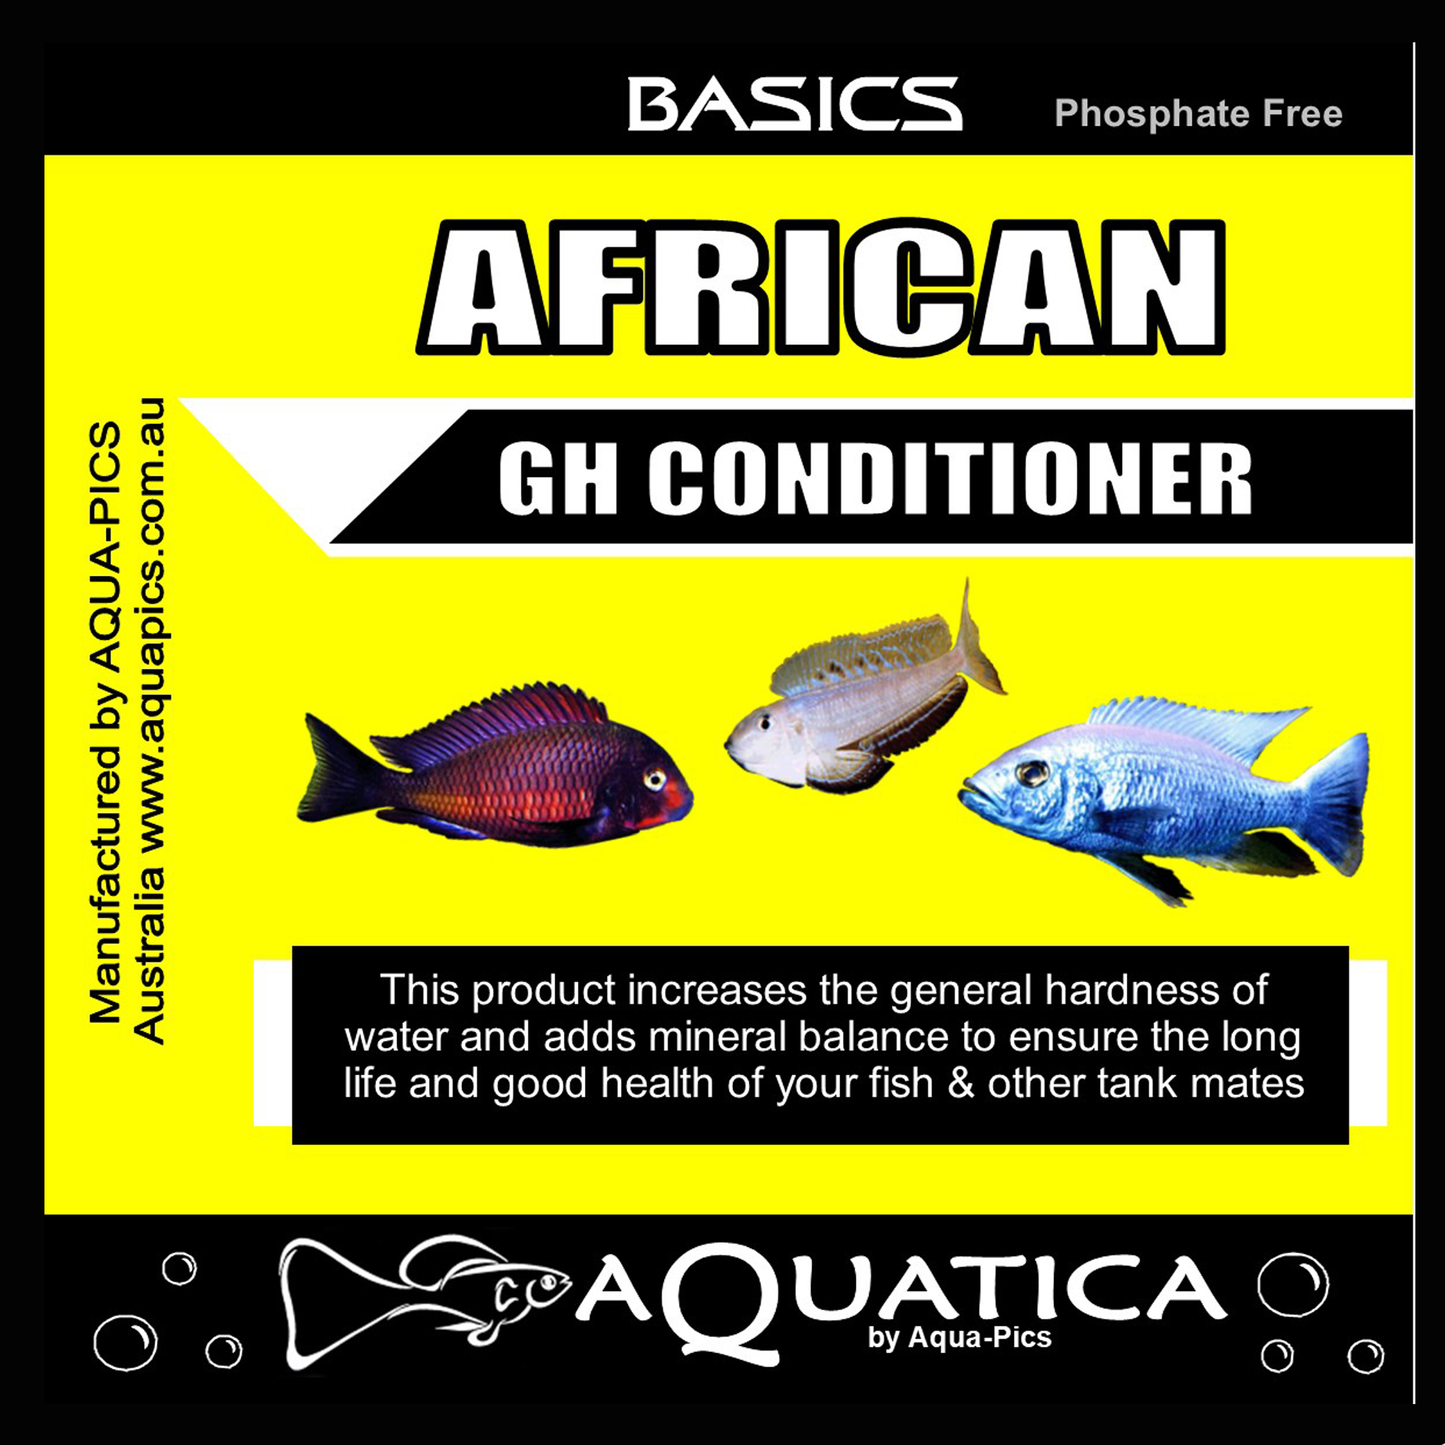 Aquatica Basics African GH Conditioner 1kg bag